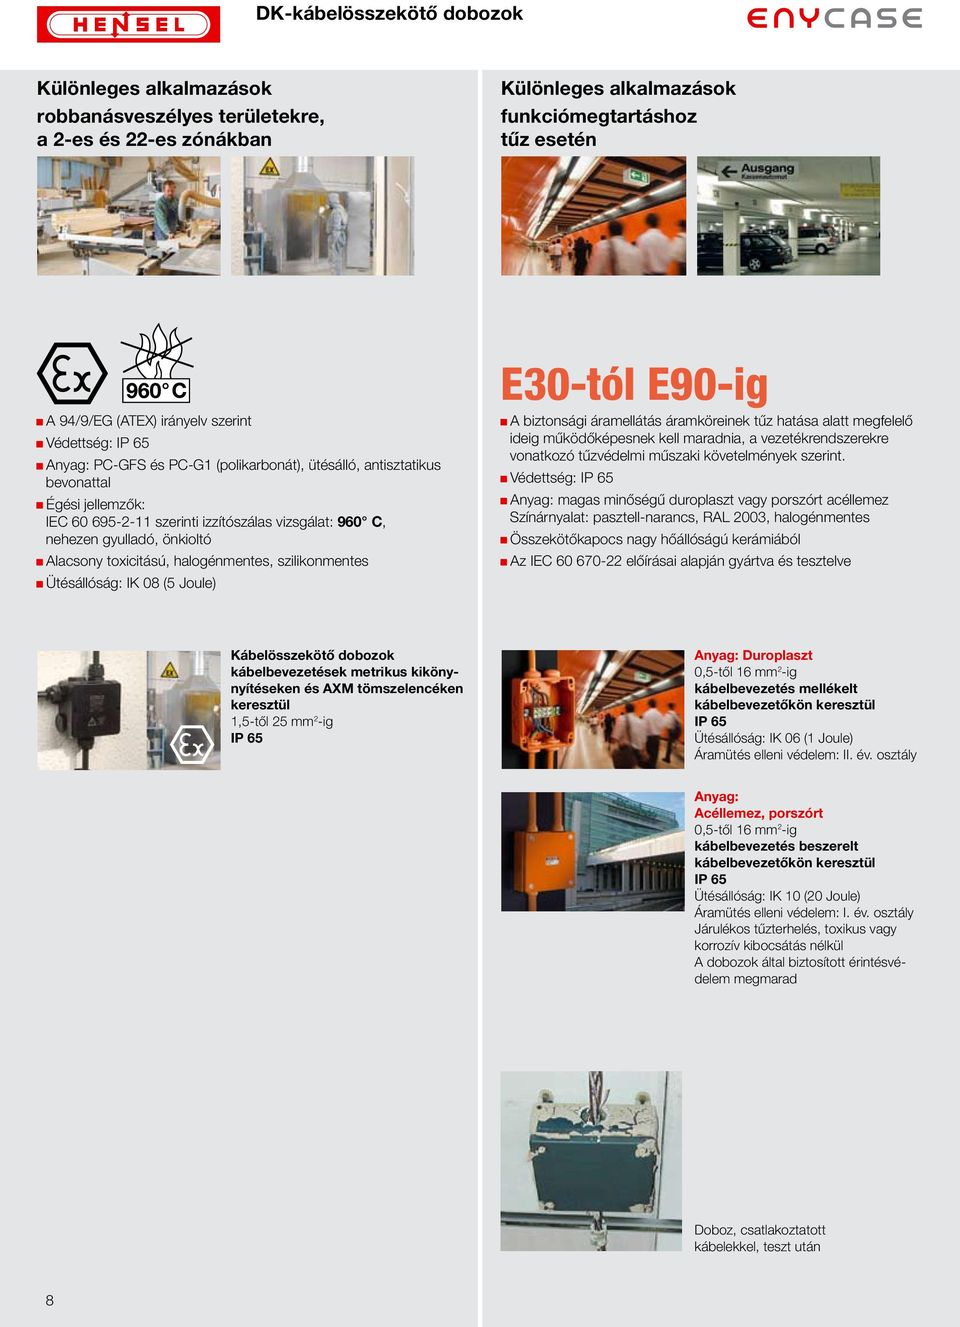 szilikonmentes Ütésállóság: IK 08 (5 Joule) E30-tól E90-ig A biztonsági áramellátás áramköreinek tűz hatása alatt megfelelő ideig működőképesnek kell maradnia, a vezetékrendszerekre vonatkozó